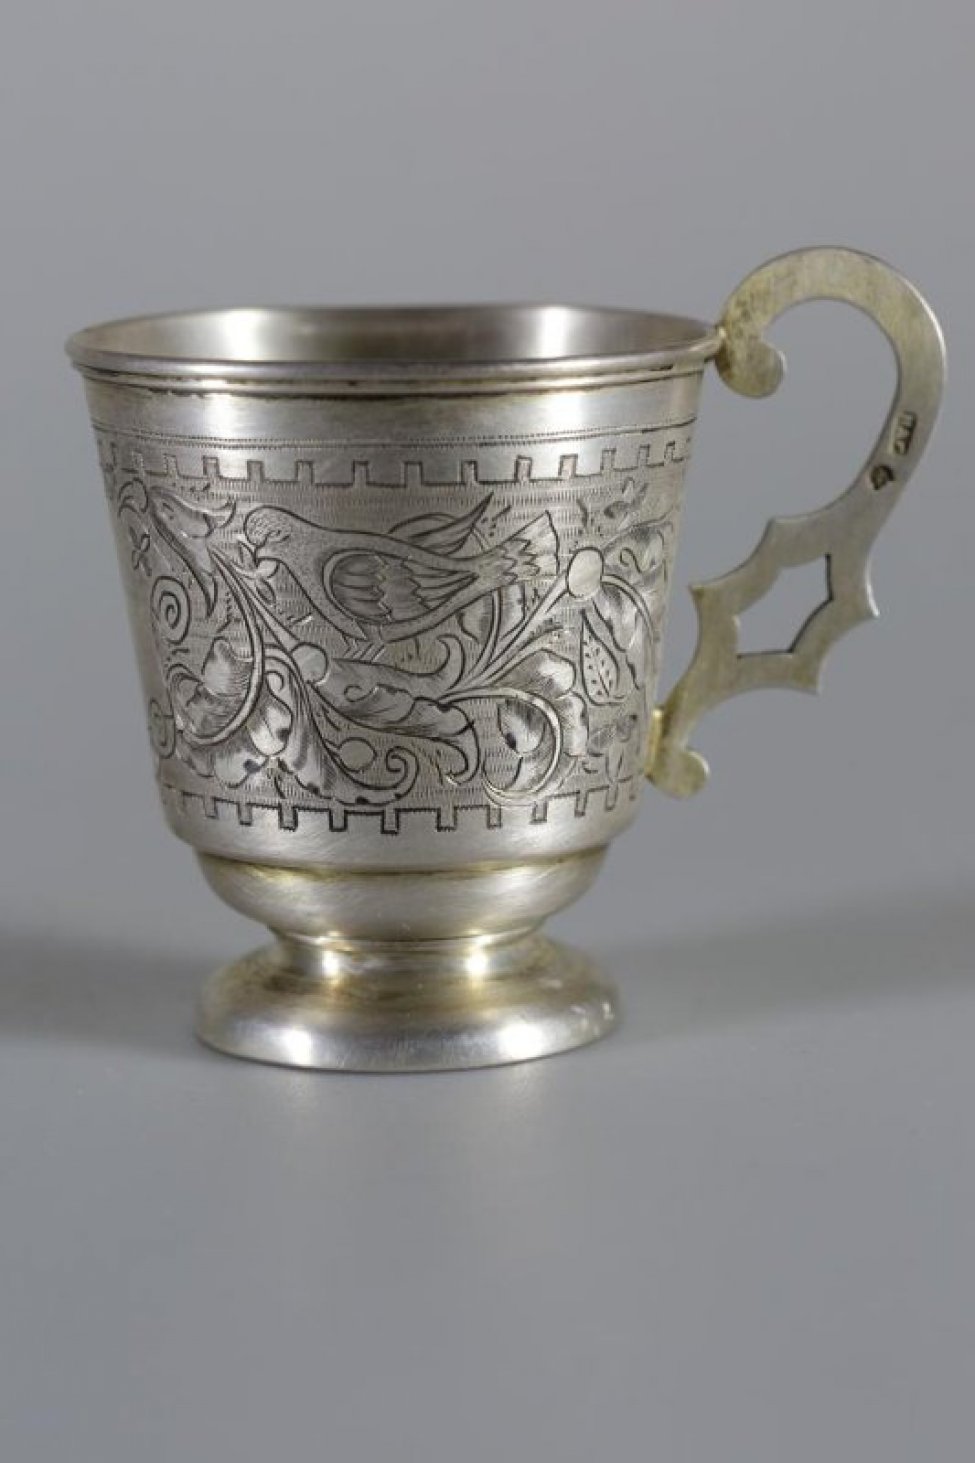 Чашка серебряная с гравировкой по тулову. Орнамент растительный, с изображением двух птиц на веточках.